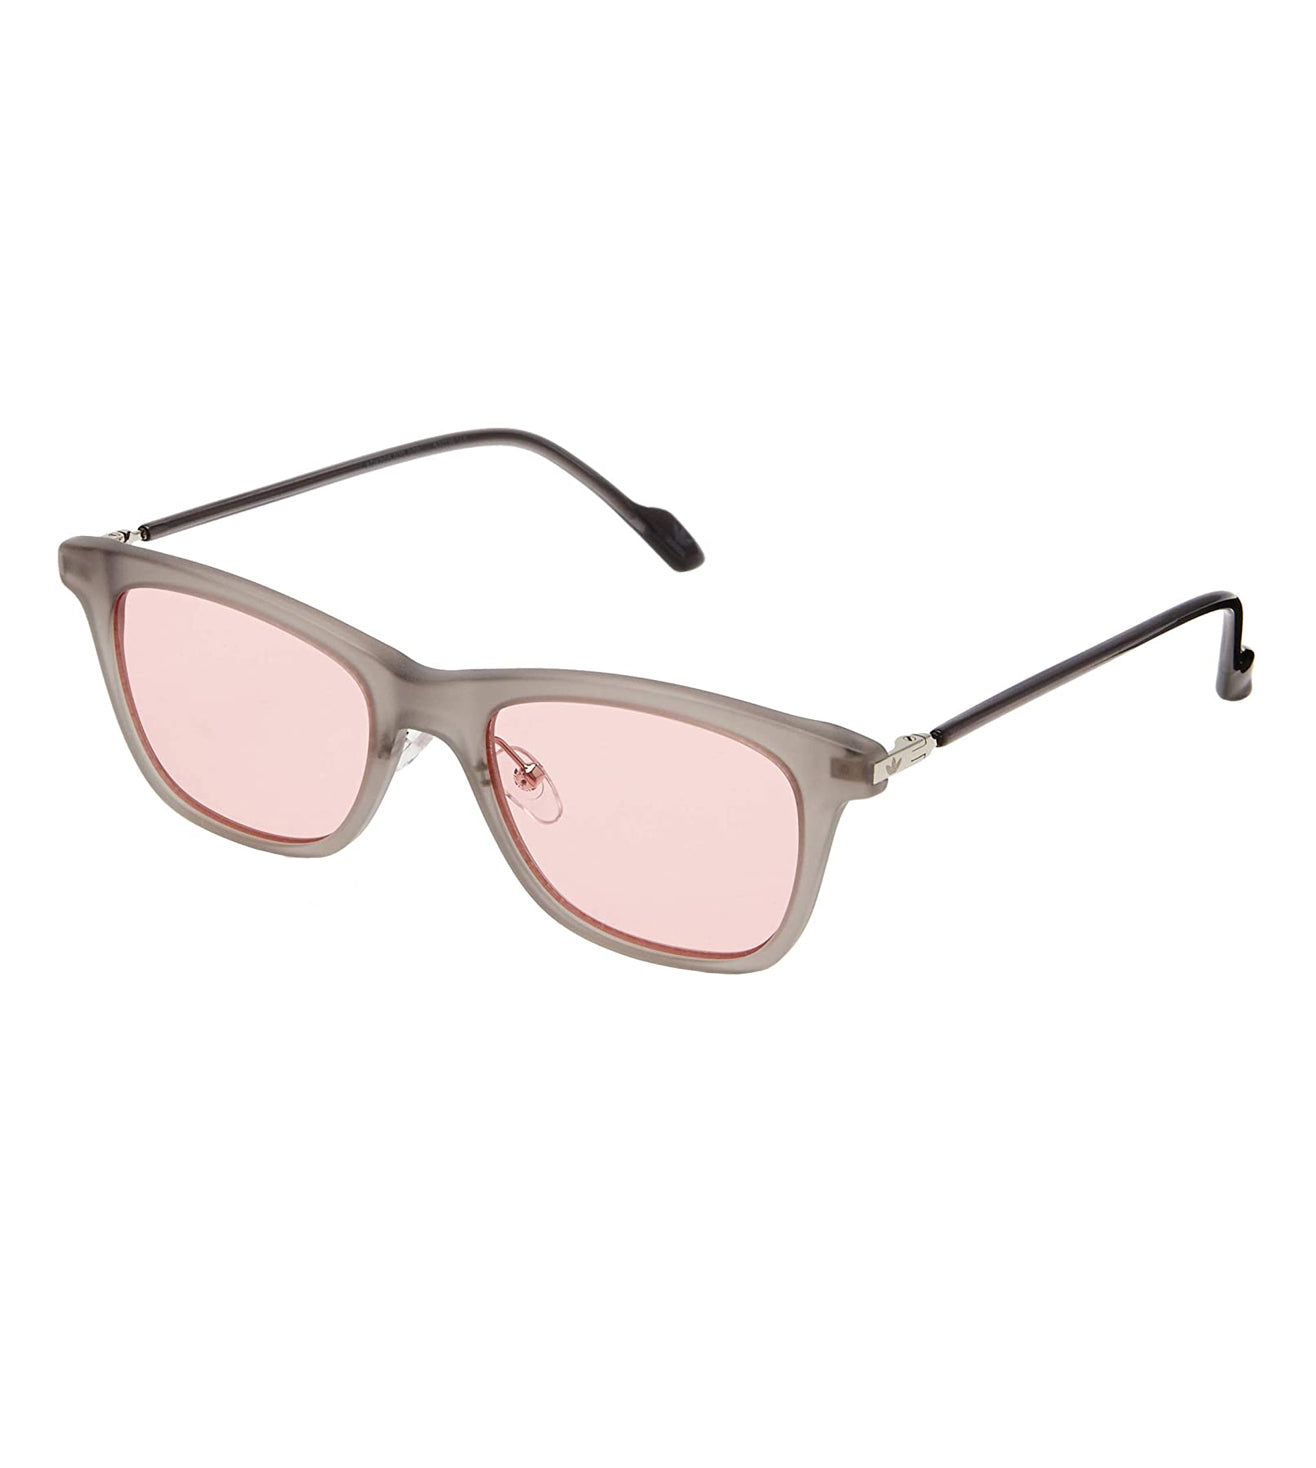 Adidas Originals Unisex Pink Square Sunglasses